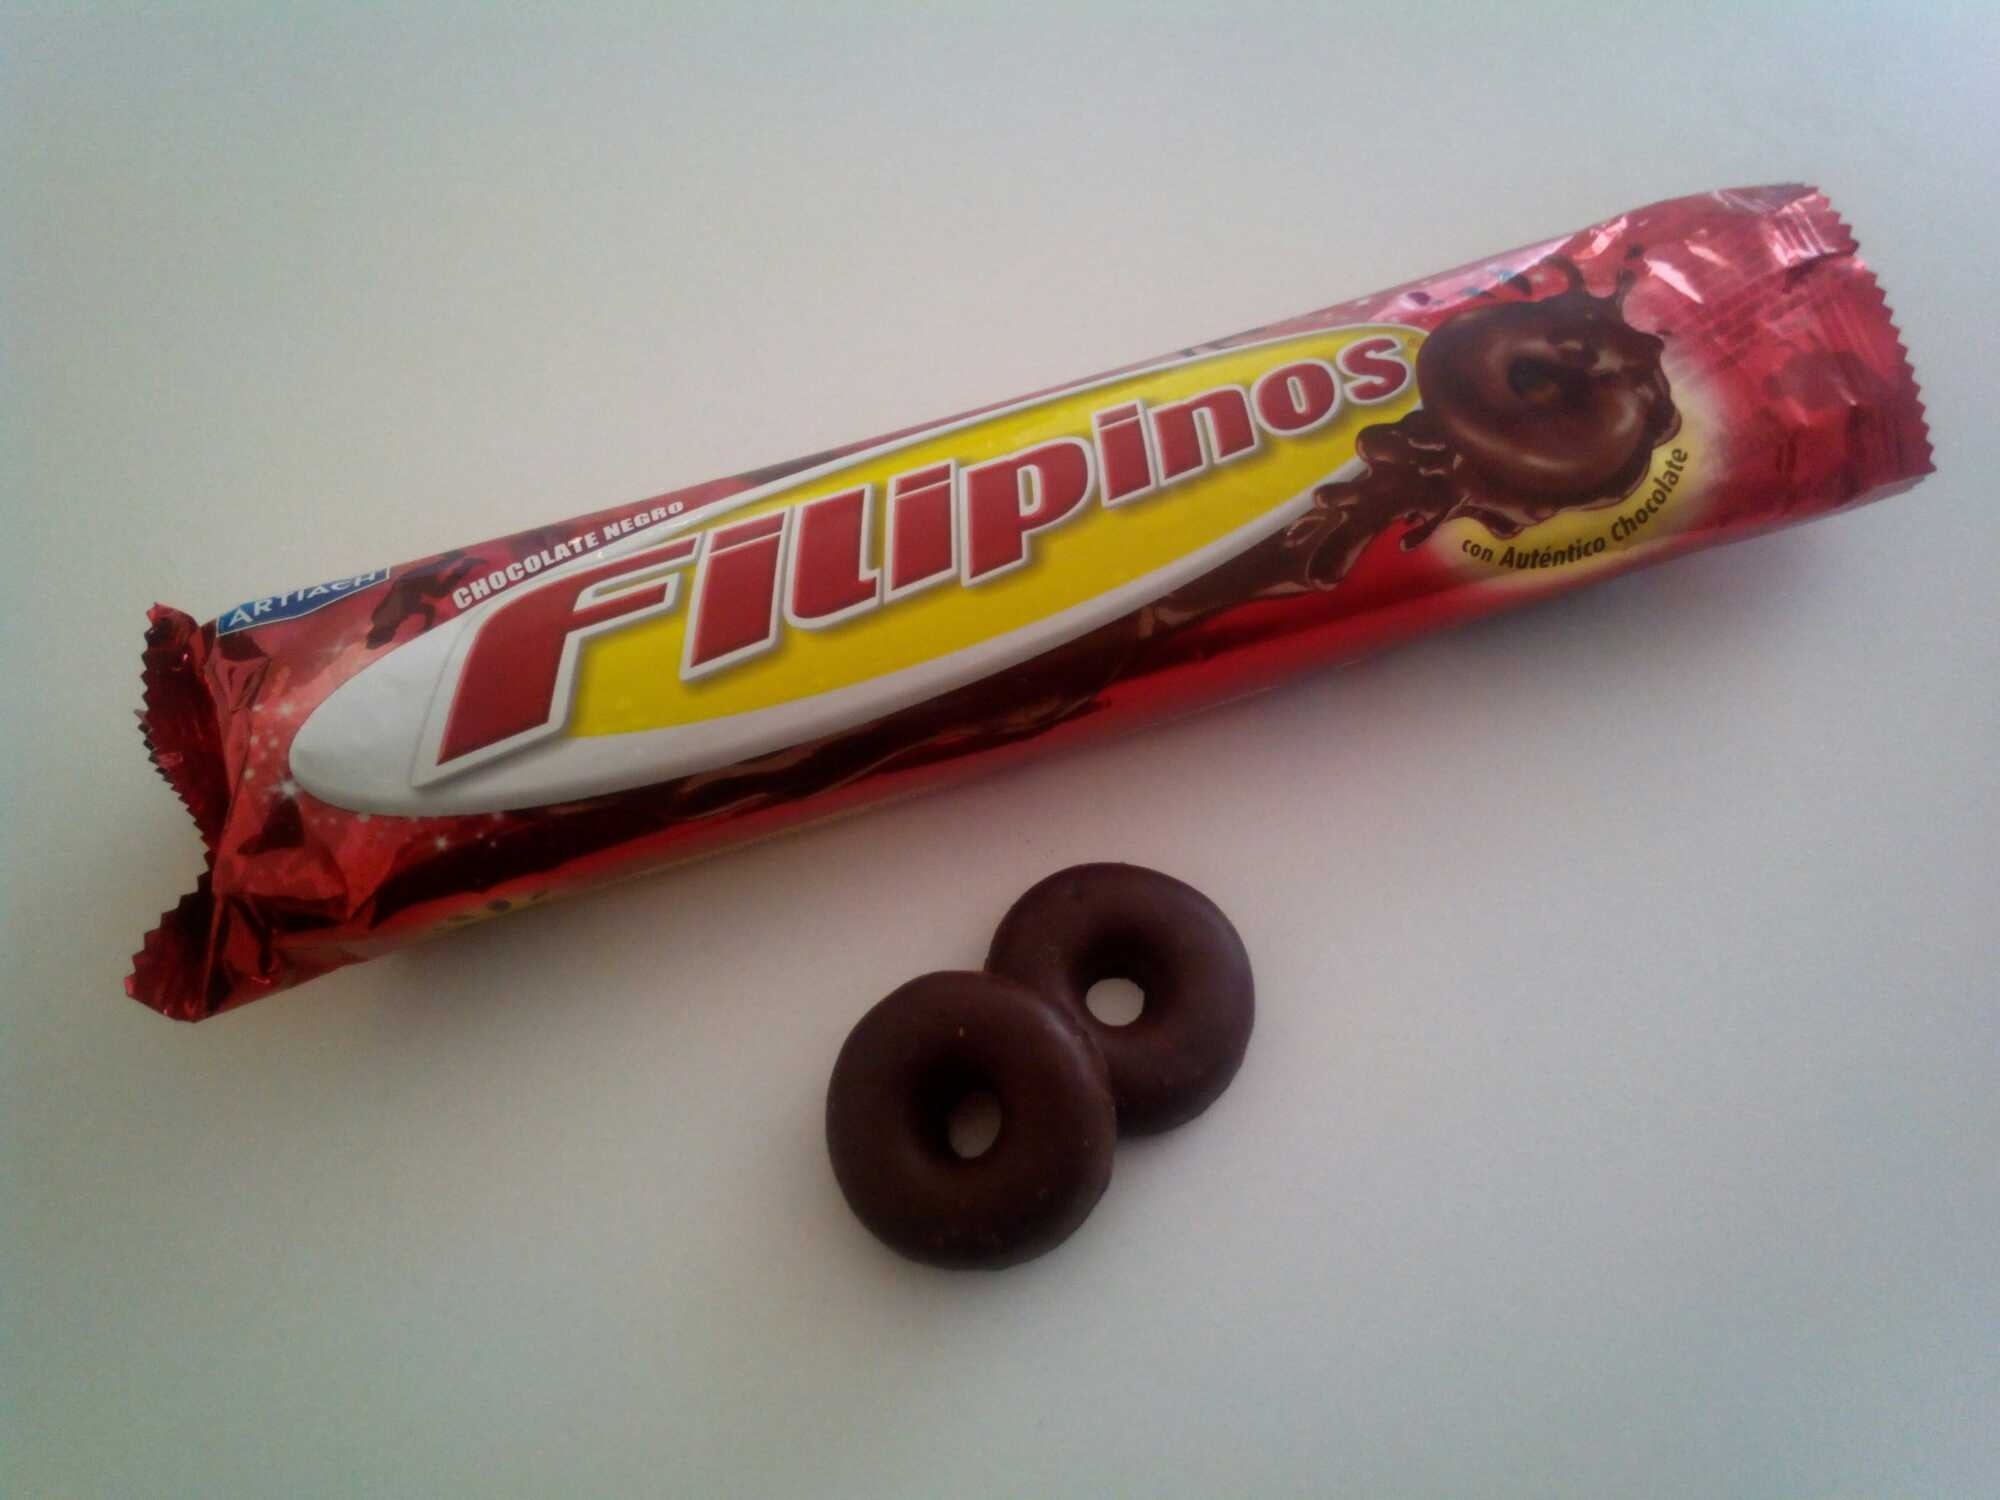 Filipinos chocolate negro - Producto - en